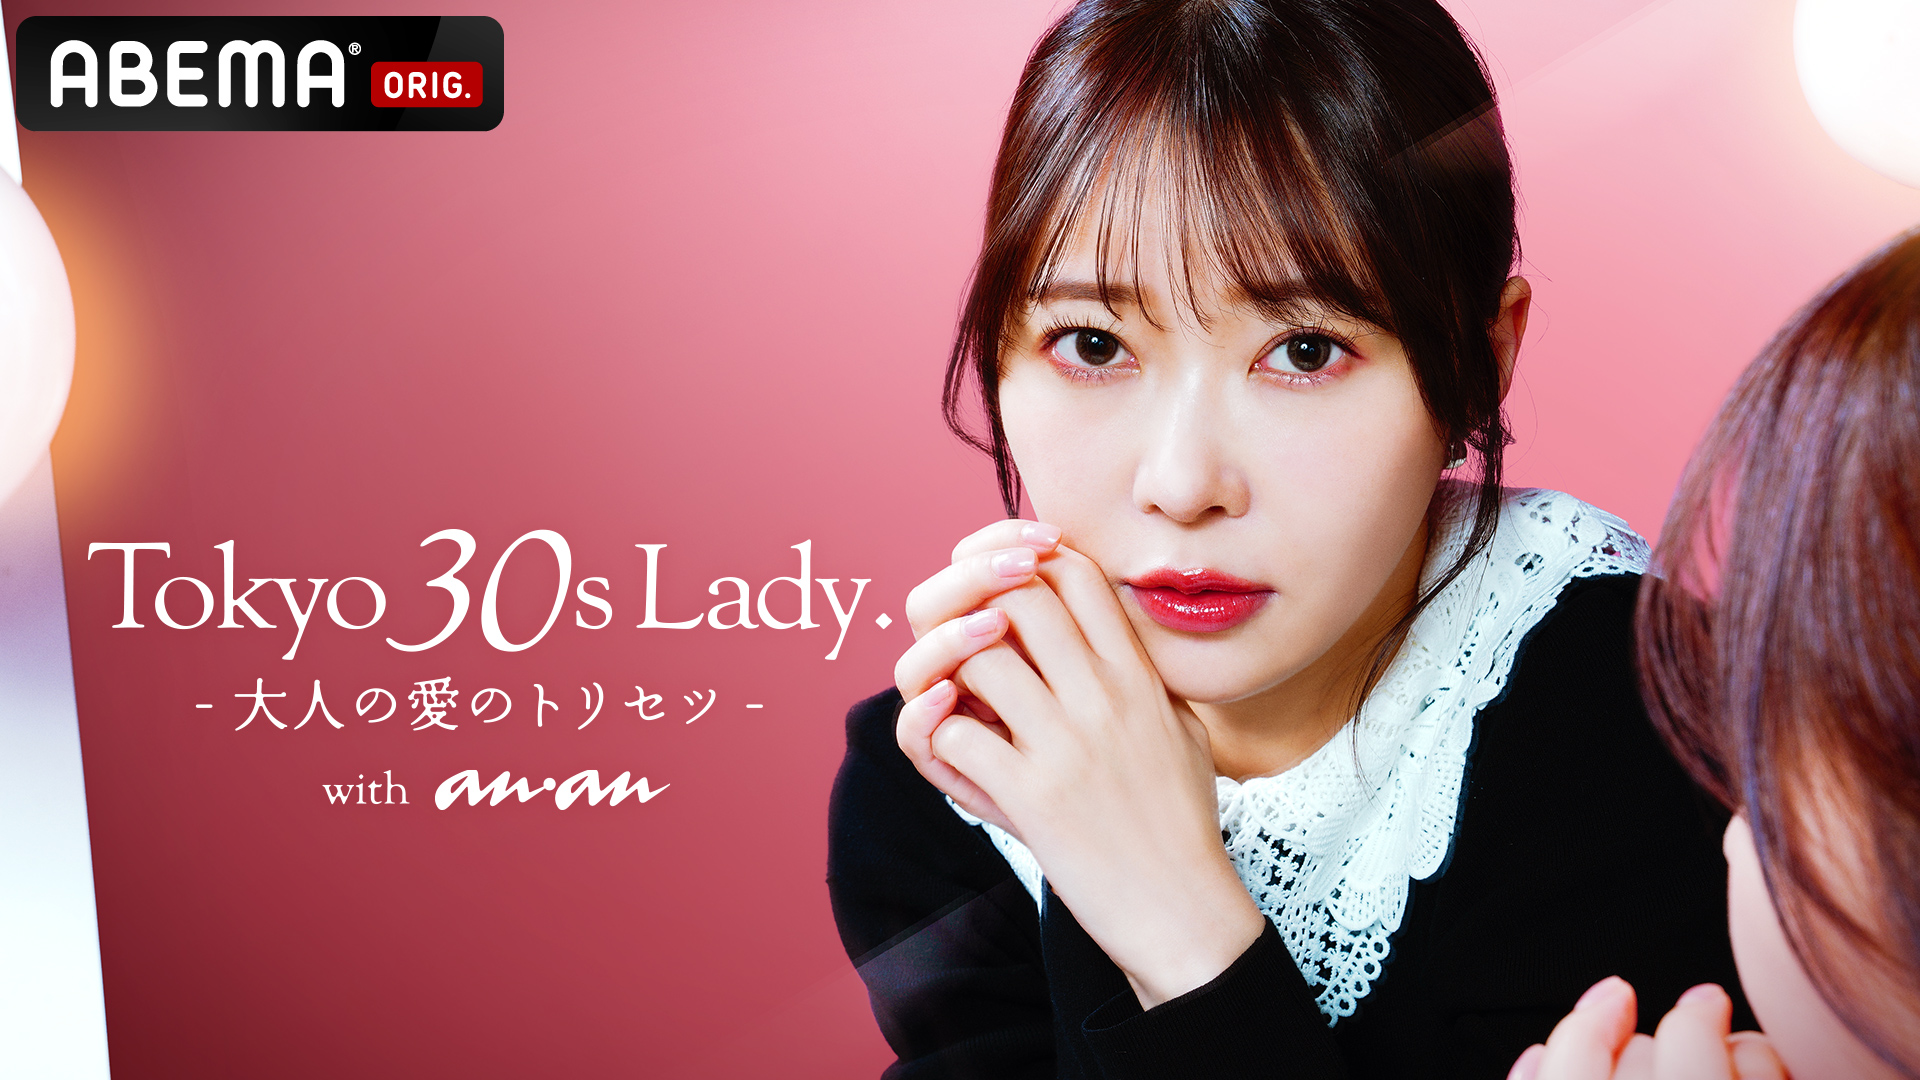 ドラマ「TOKYO 30S LADY. - ⼤⼈の愛のトリセツ - with anan」に衣装協力しました